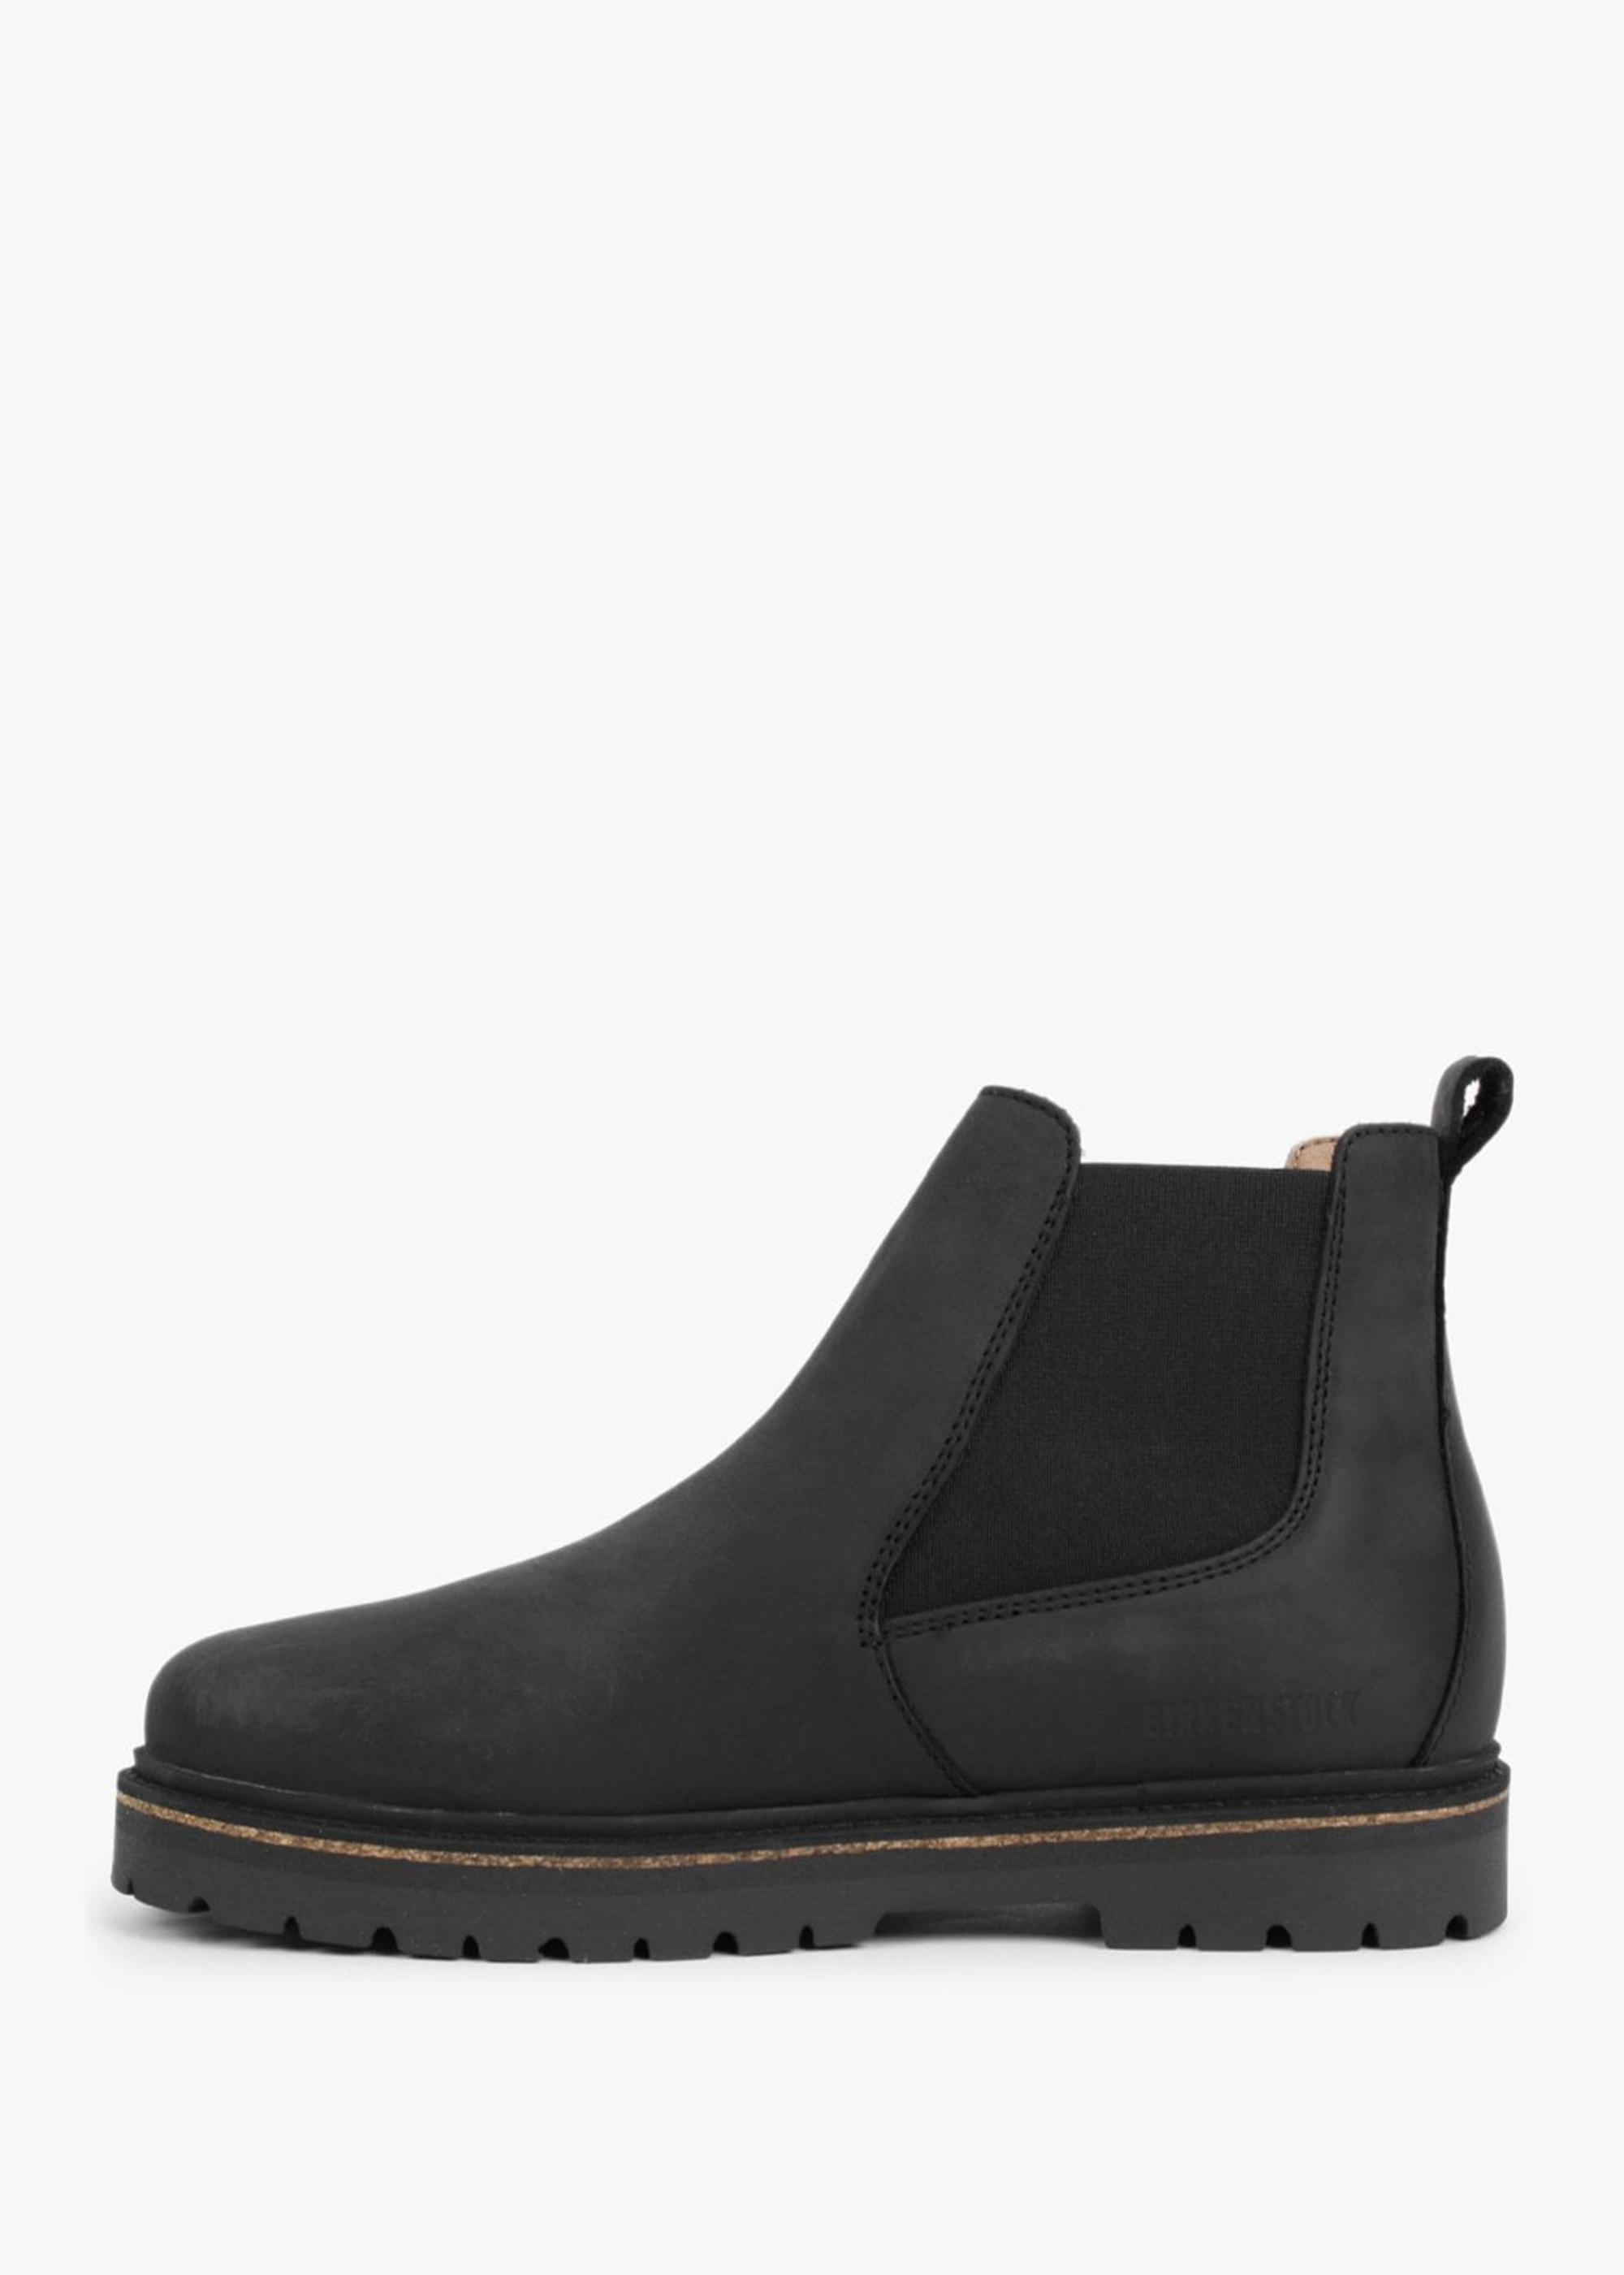 Birkenstock Stalon Ii Black Waxy Nubuck Leather Chelsea Boots | Lyst